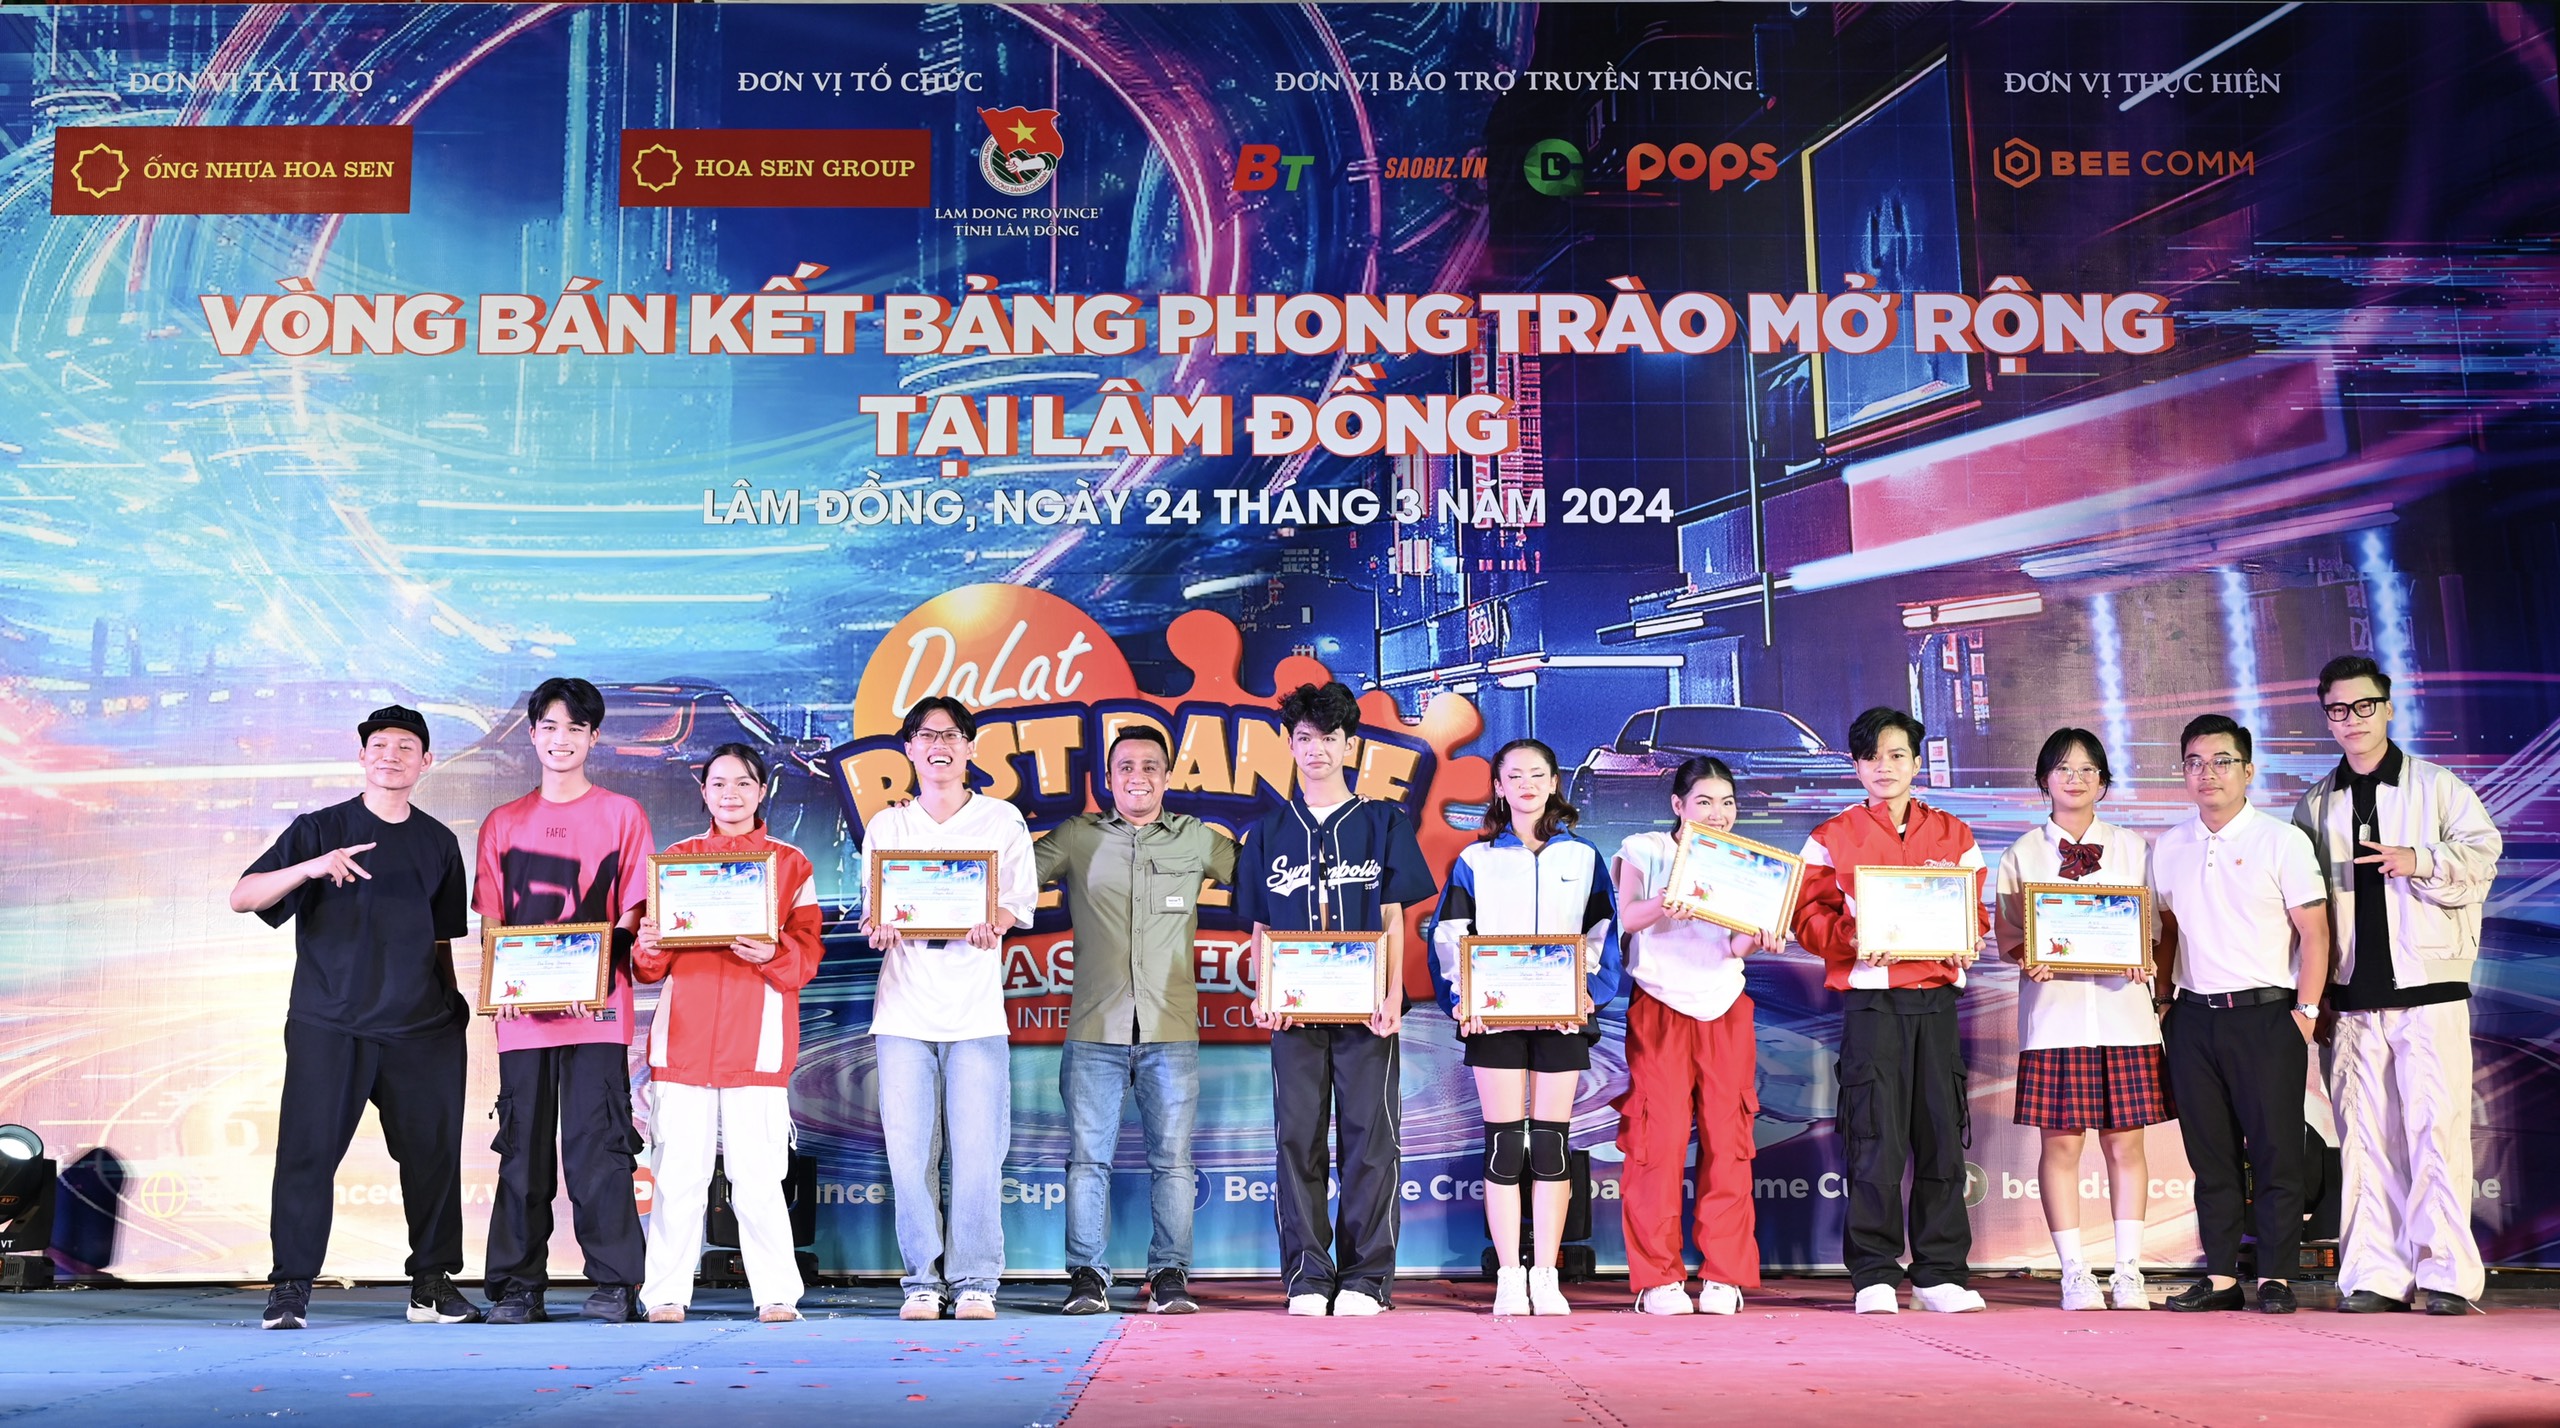 Lộ diện 14 nhóm nhảy phong trào tại Lâm Đồng lọt vào chung kết Dalat Best Dance Crew 2024 - Hoa Sen Home International Cup - 8